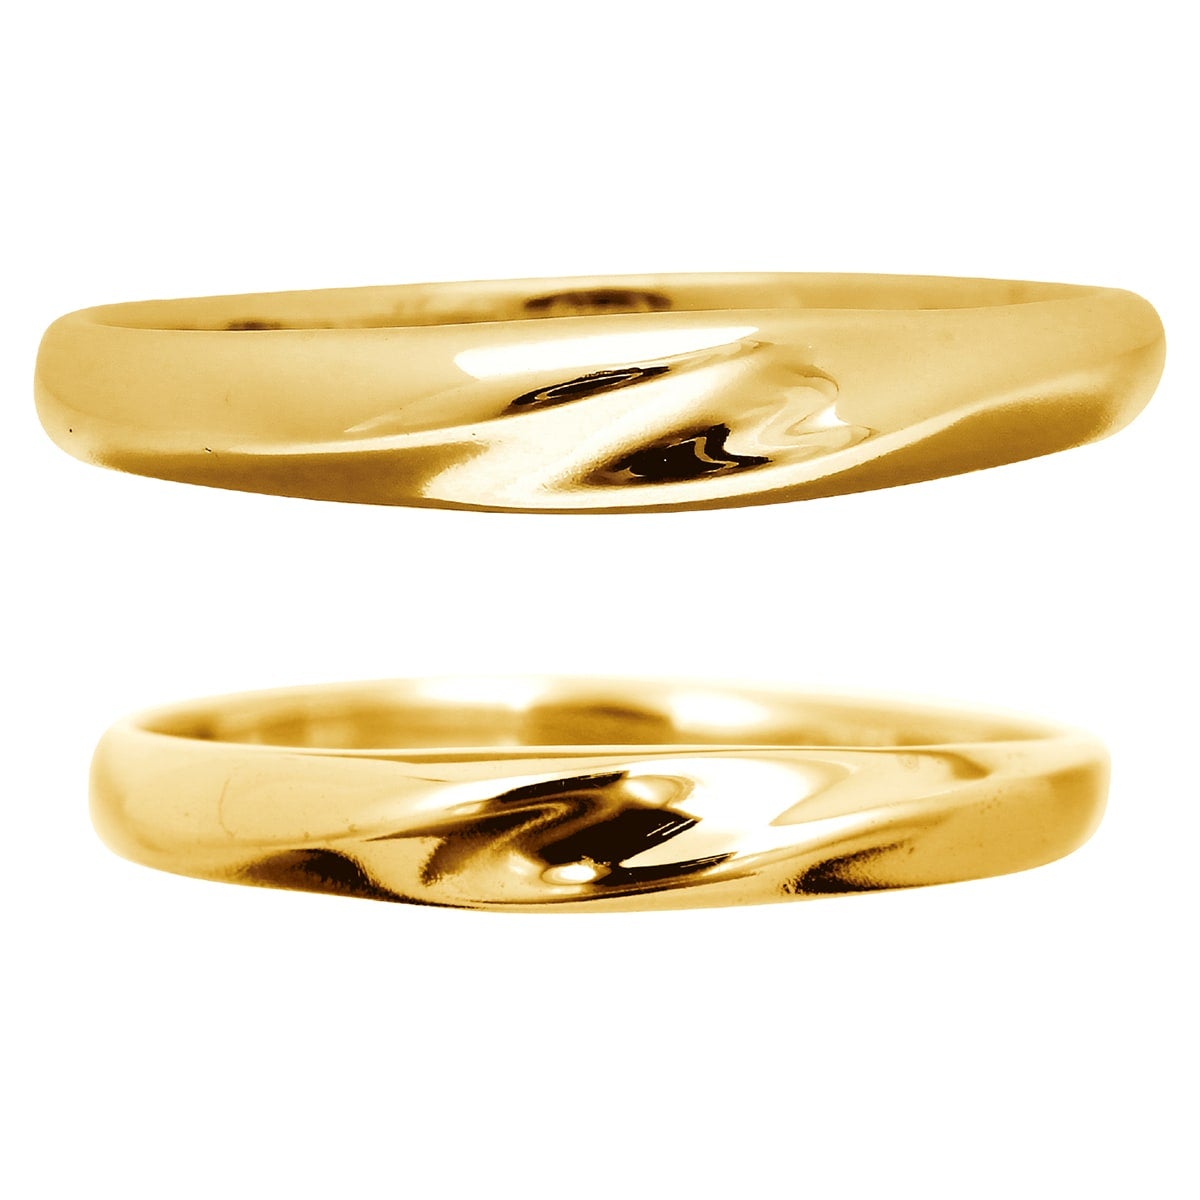 結婚指輪 2本セット | mr638l-mr638m